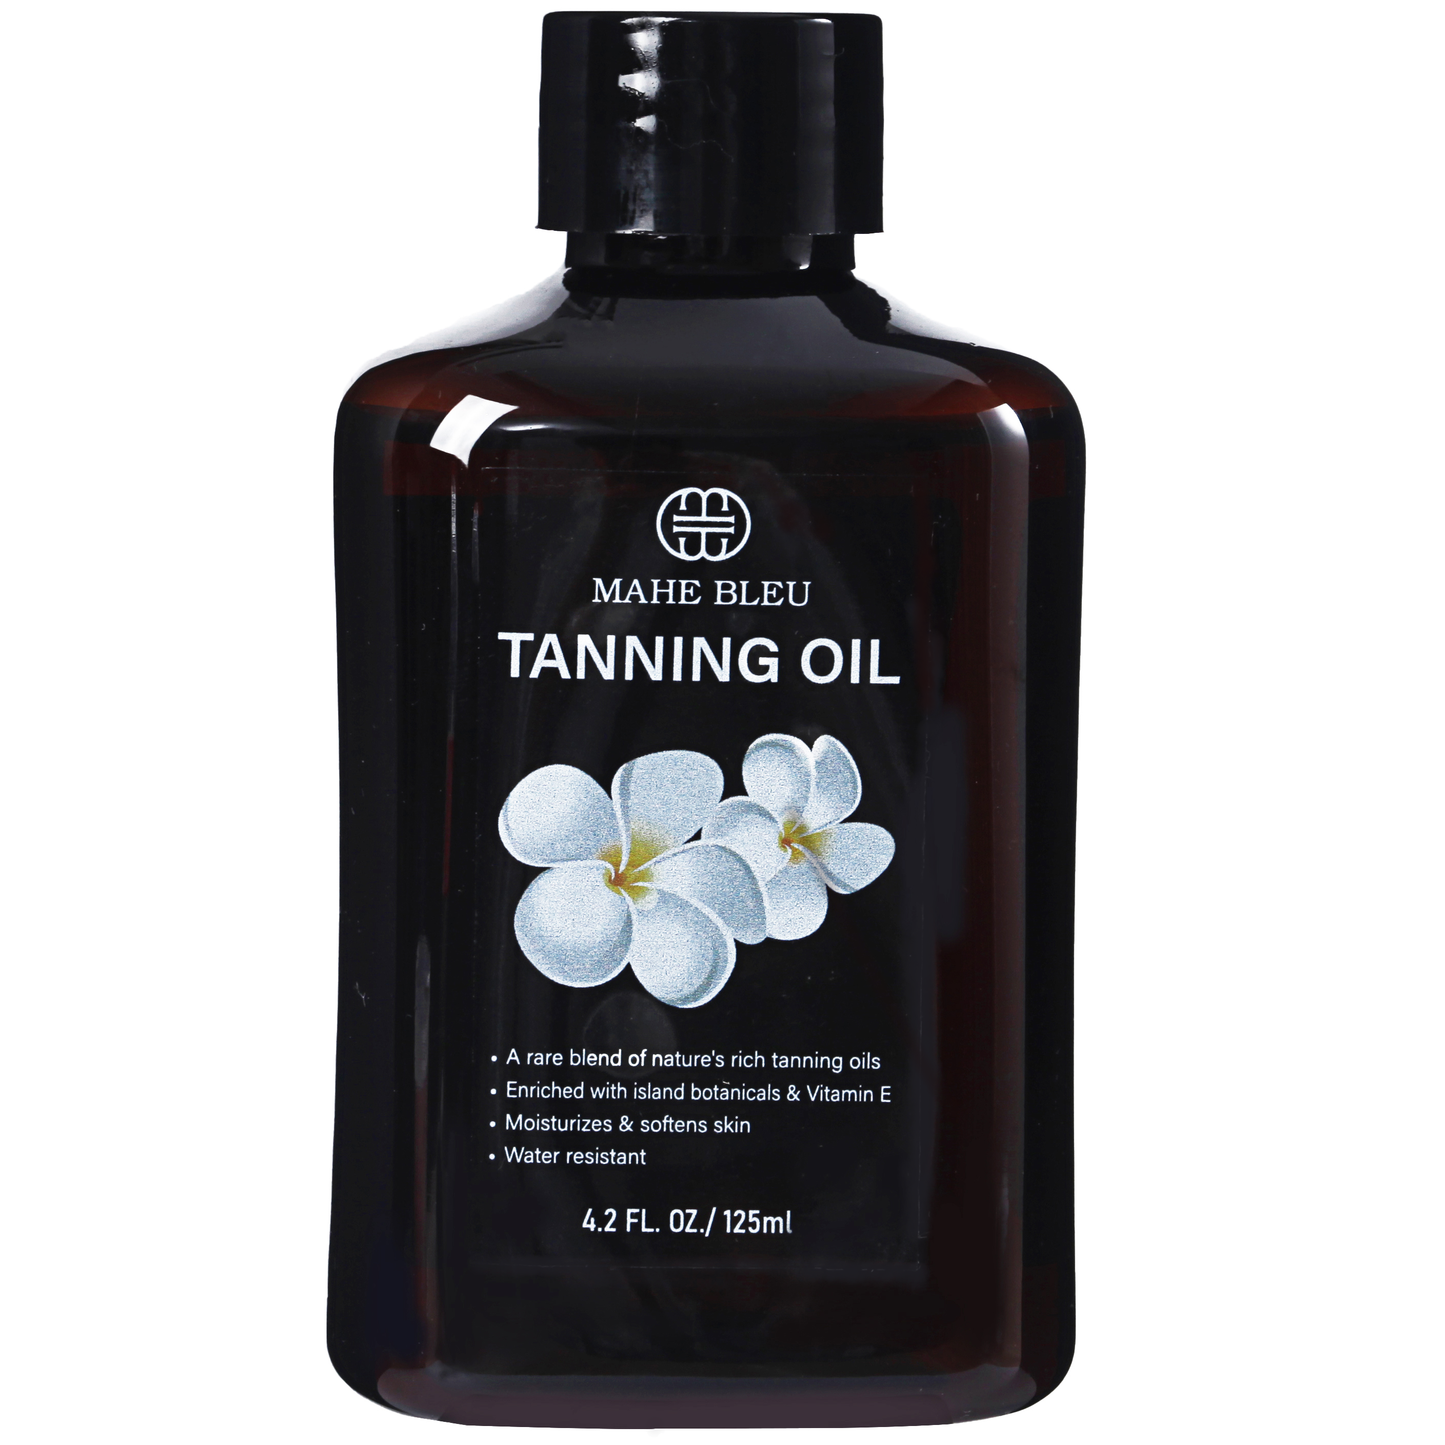 All Natural Self Tanning Oil - Coconut Oil & Vitamin E